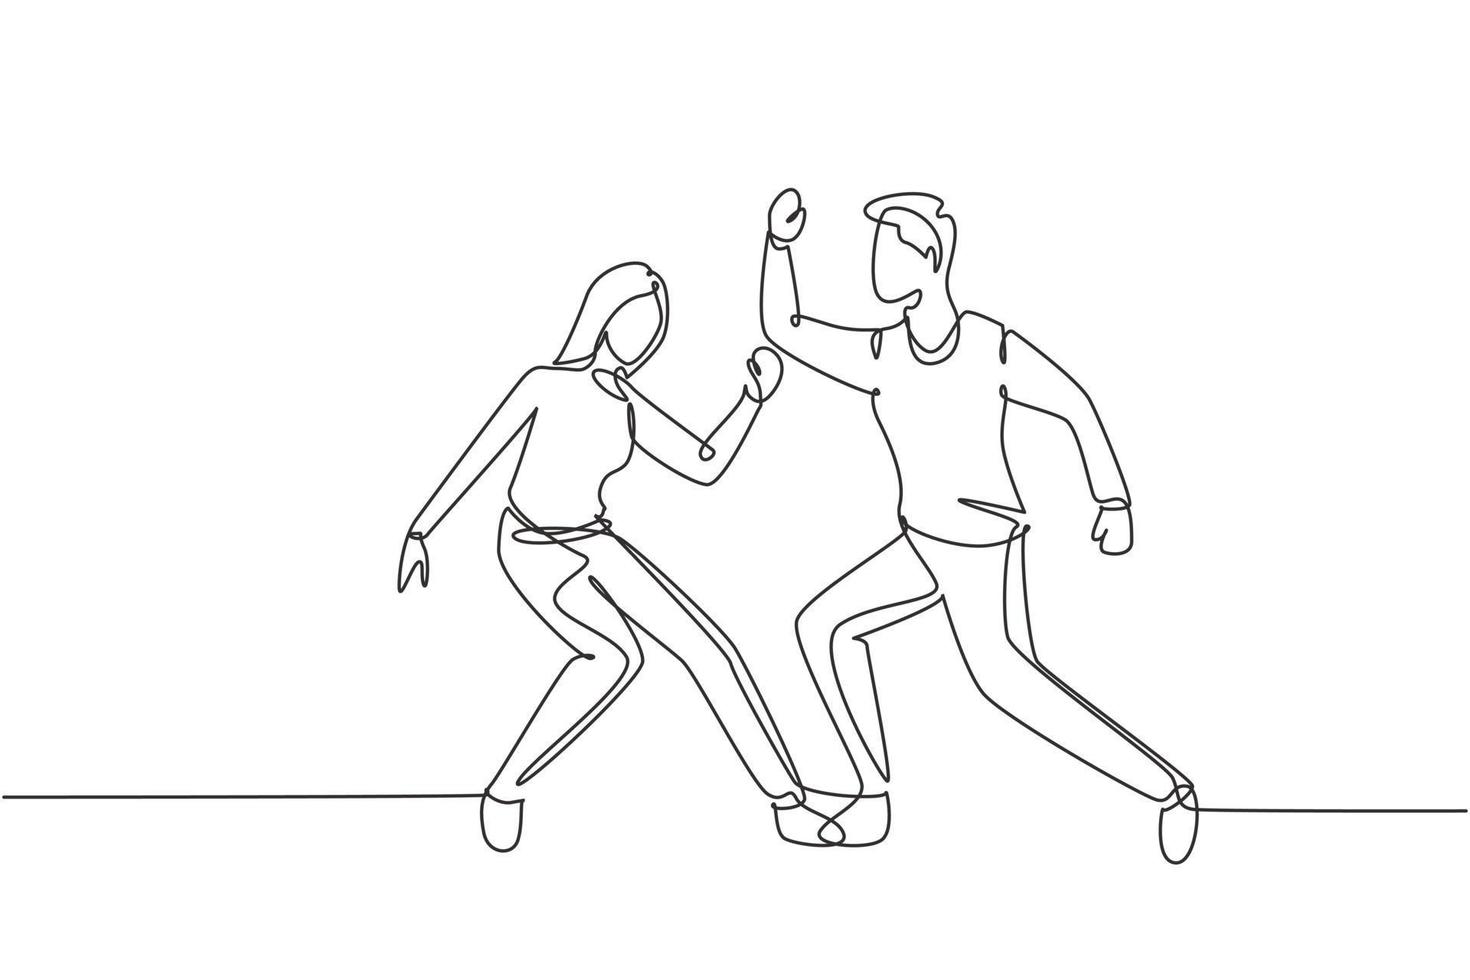 Kontinuierliche One-Line-Zeichnung von Mann und Frau, die Lindy Hop oder Swing tanzen. männliche und weibliche Charaktere, die in der Schule oder auf einer Party tanzen. Spaß Lebensstil. Einzeilige Zeichnung Design Vektorgrafik Illustration vektor